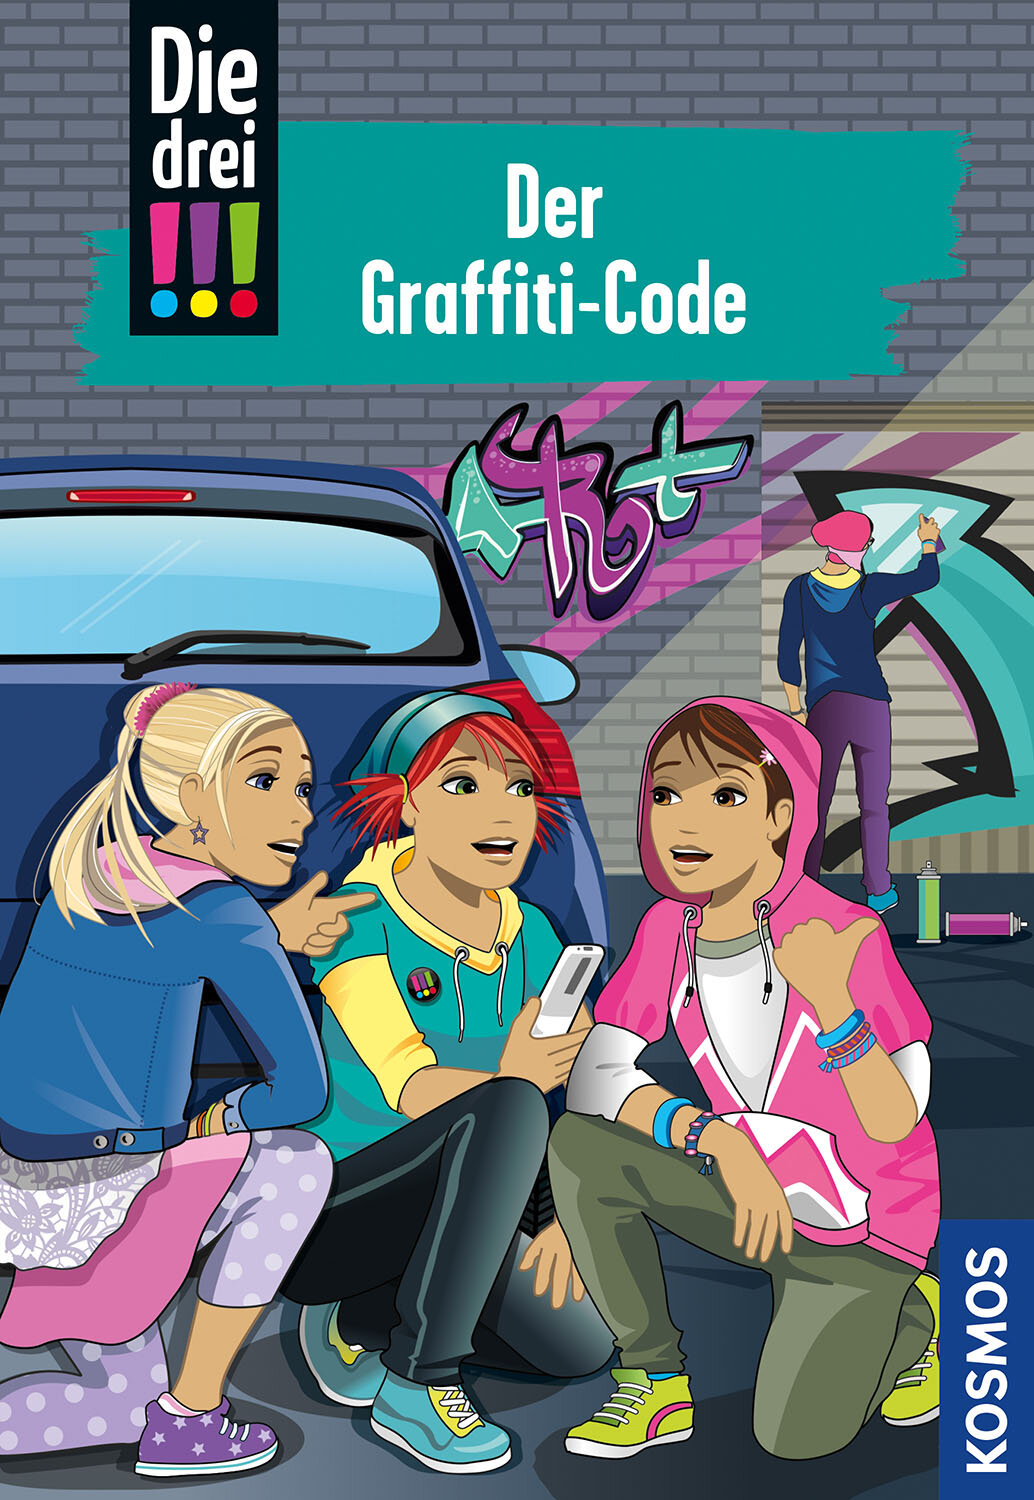 Die drei !!!  64  Der Graffiti-Code